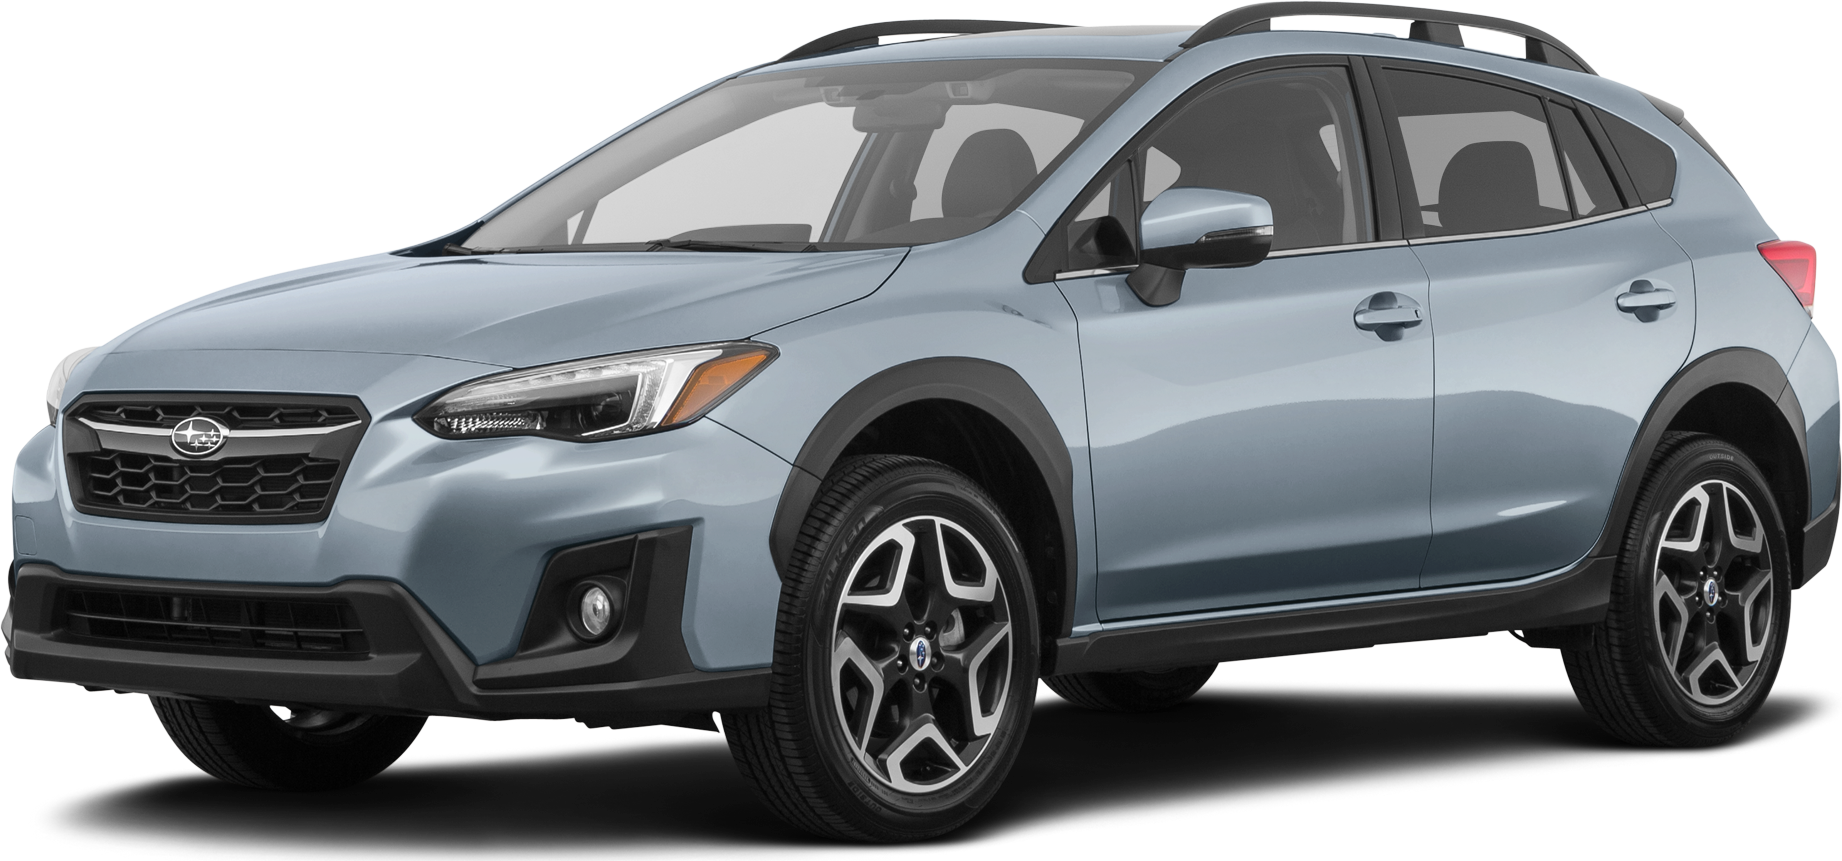 2019 Subaru Crosstrek Price, Value, Ratings & Reviews